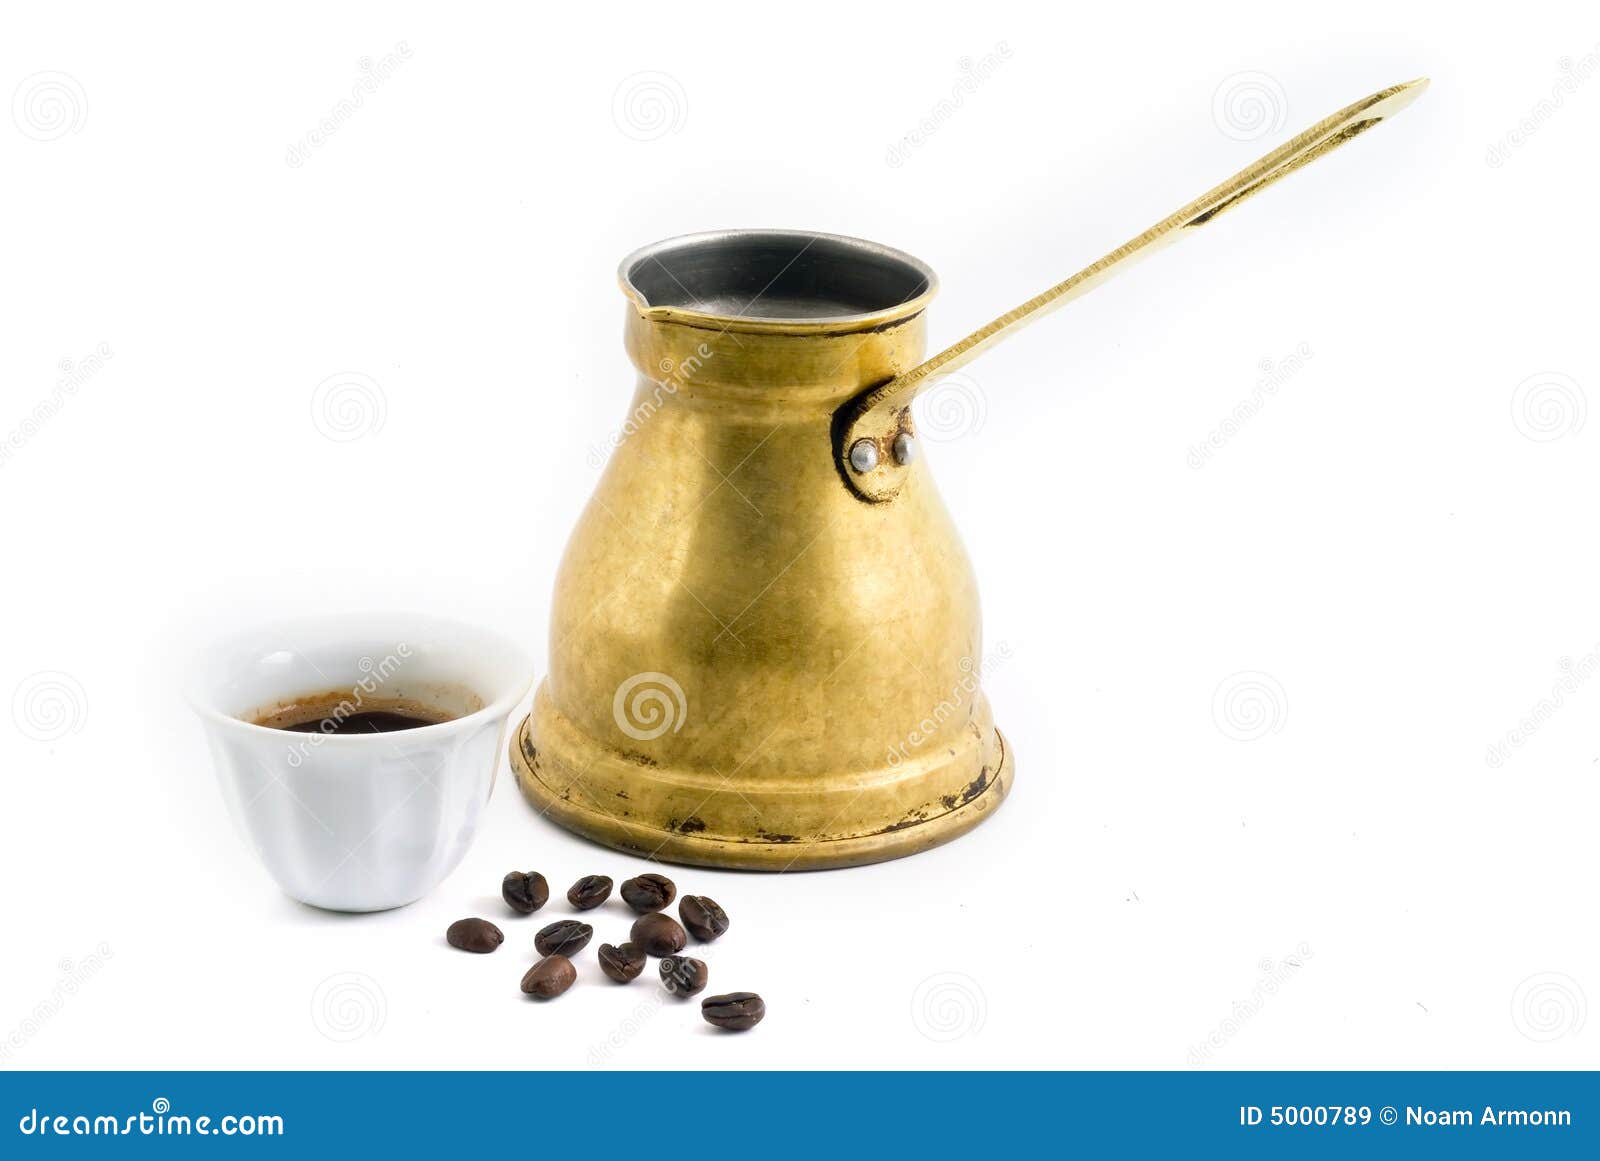 Arabische koffie. De Arabische kleine pot van de koperkoffie met kop en koffiebonen die op wit worden geïsoleerds